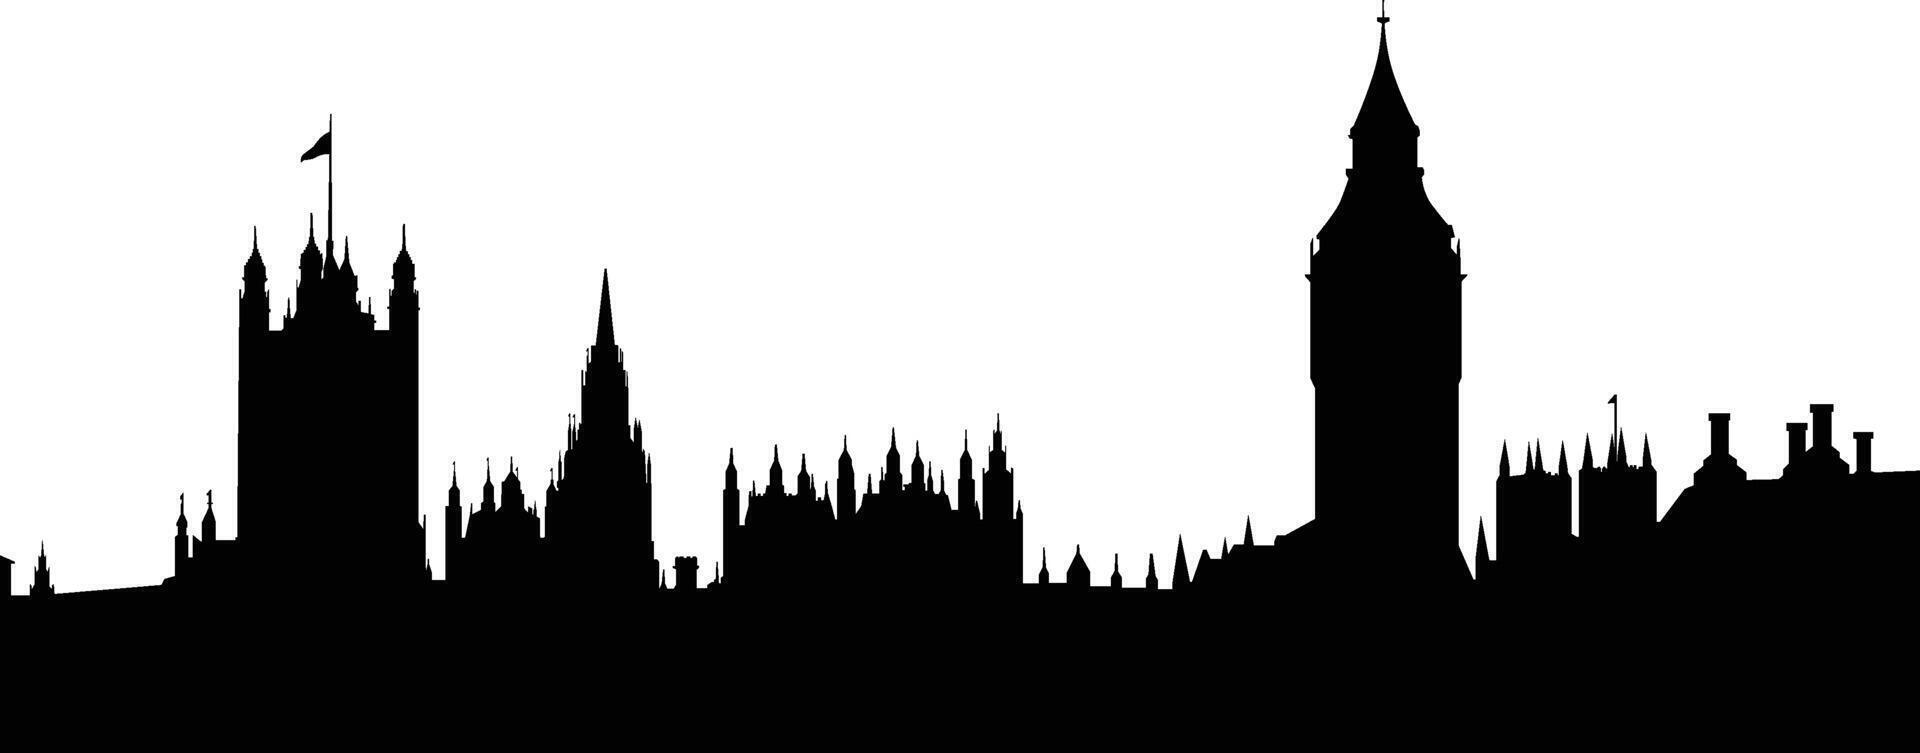 Ilustración de vector de silueta de horizonte de la ciudad de Londres